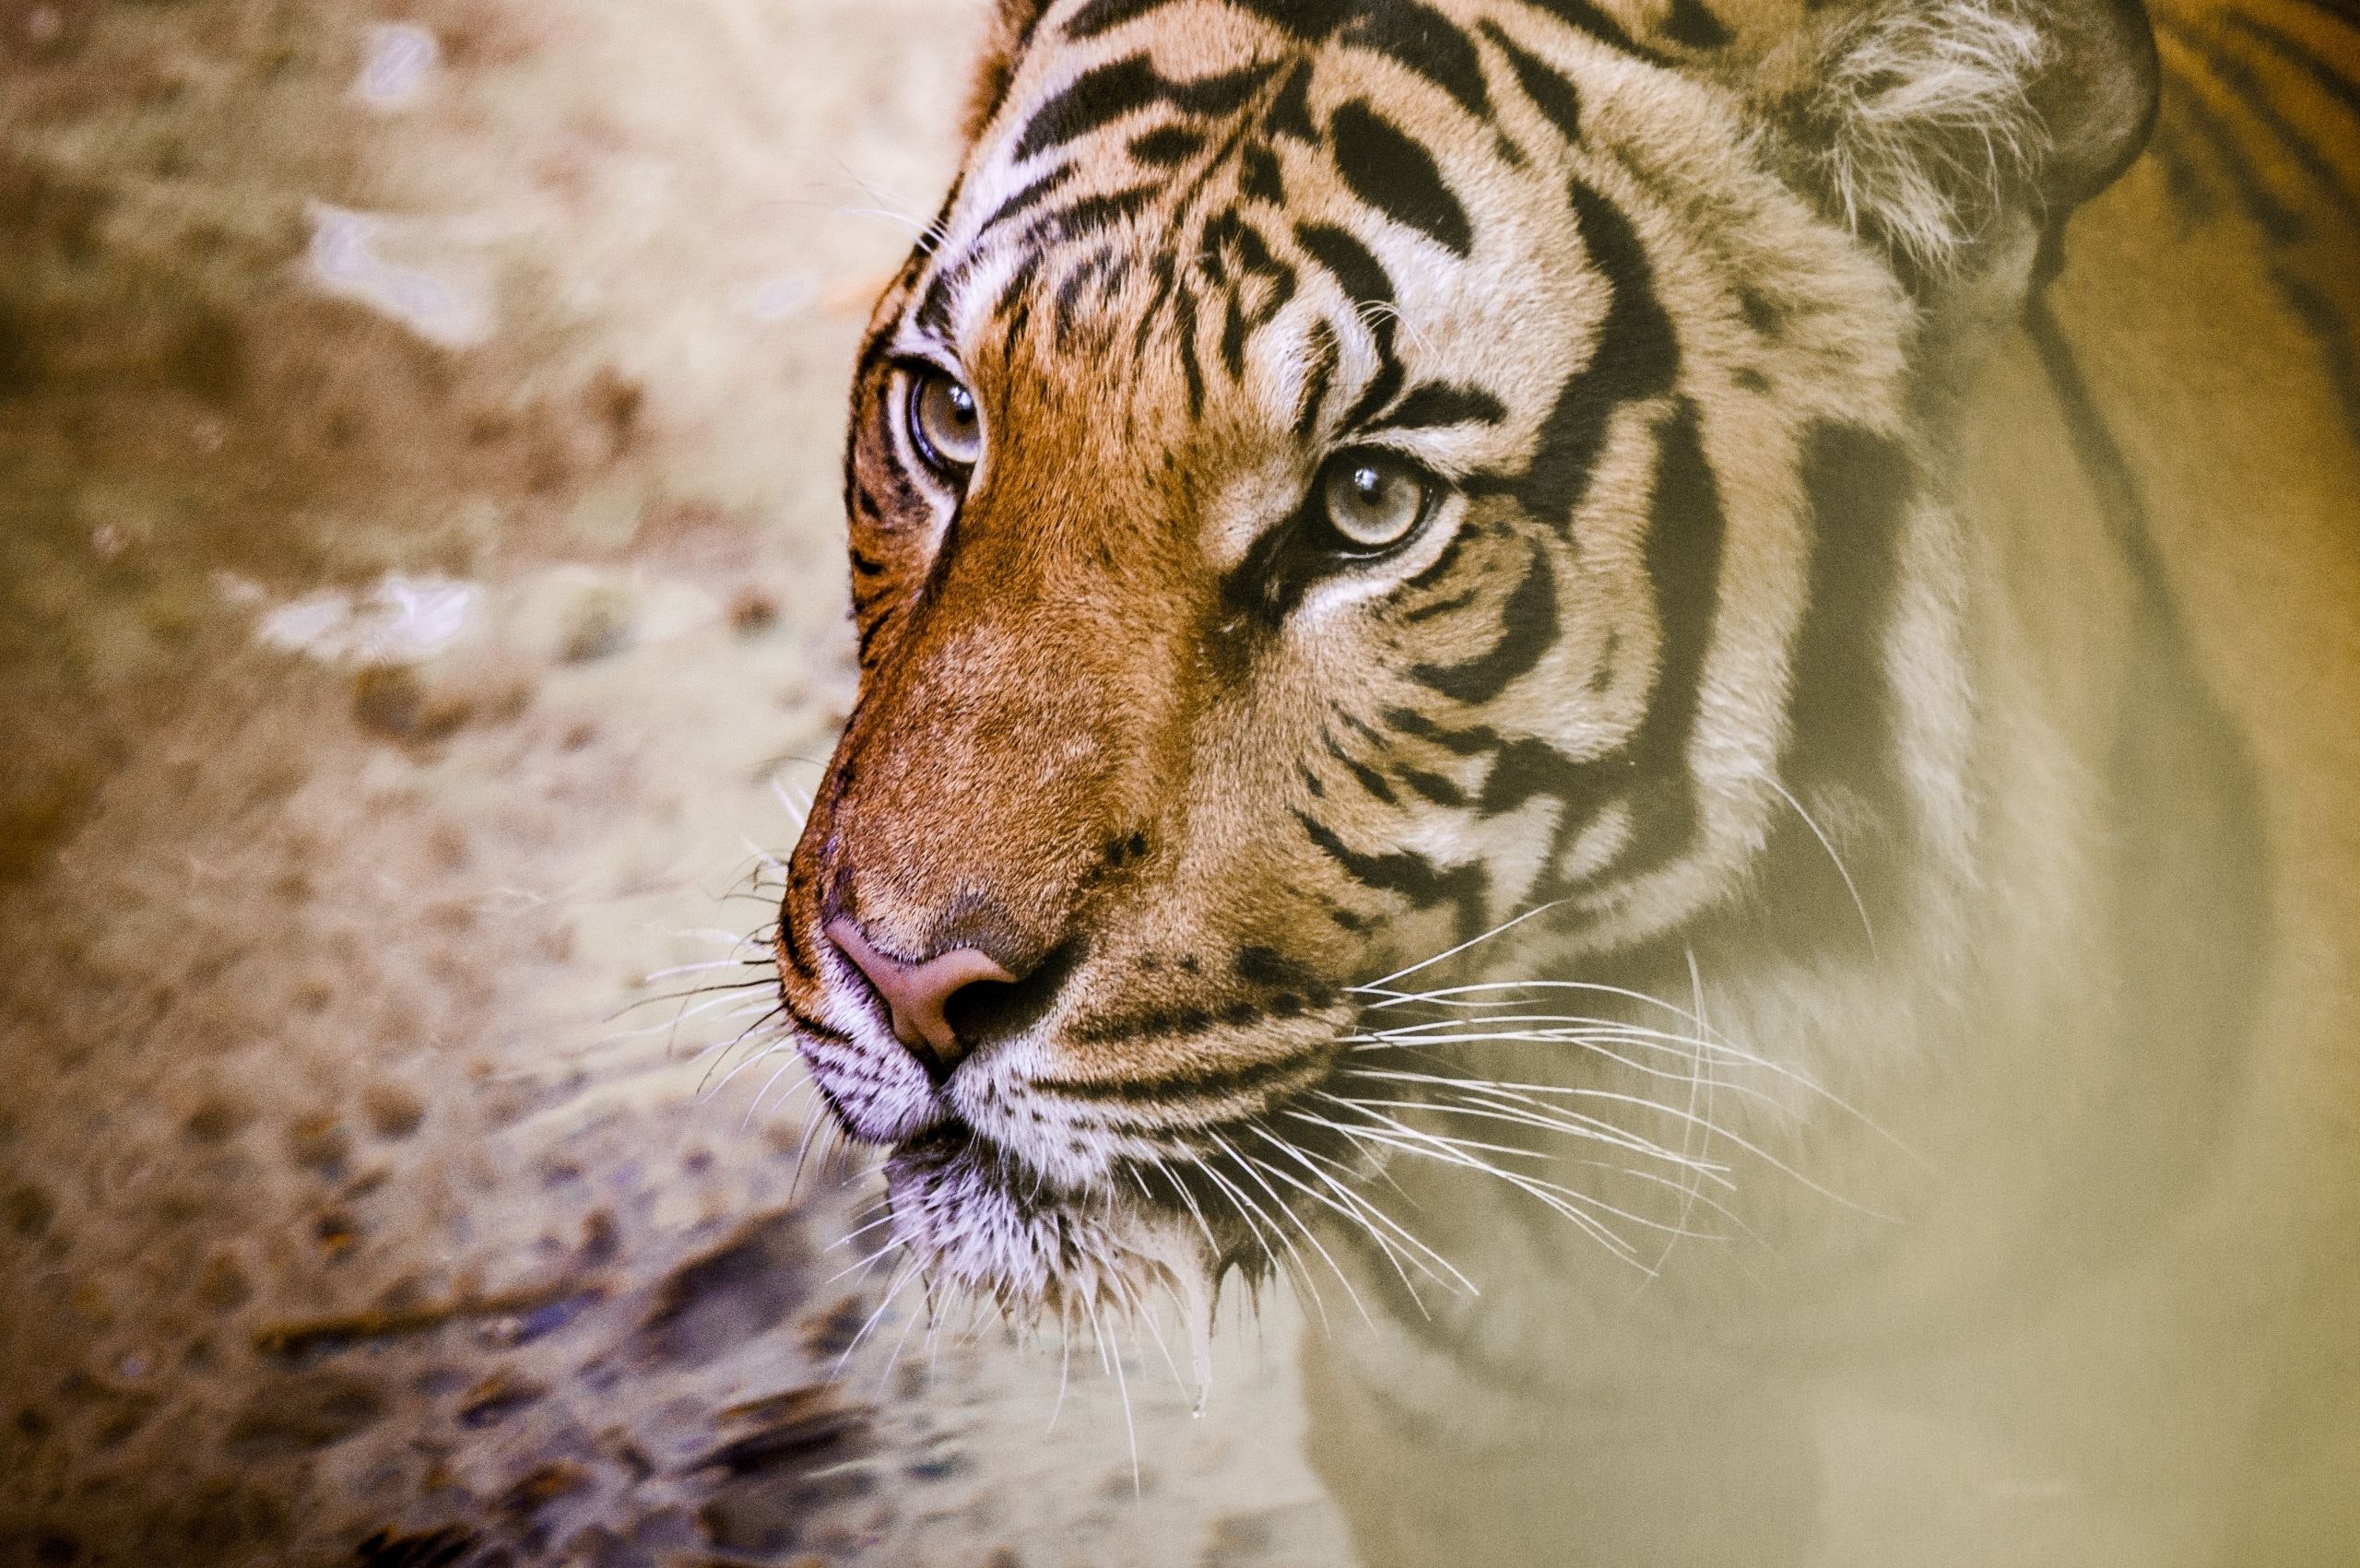 Aggressive Tiger , HD Wallpaper & Backgrounds